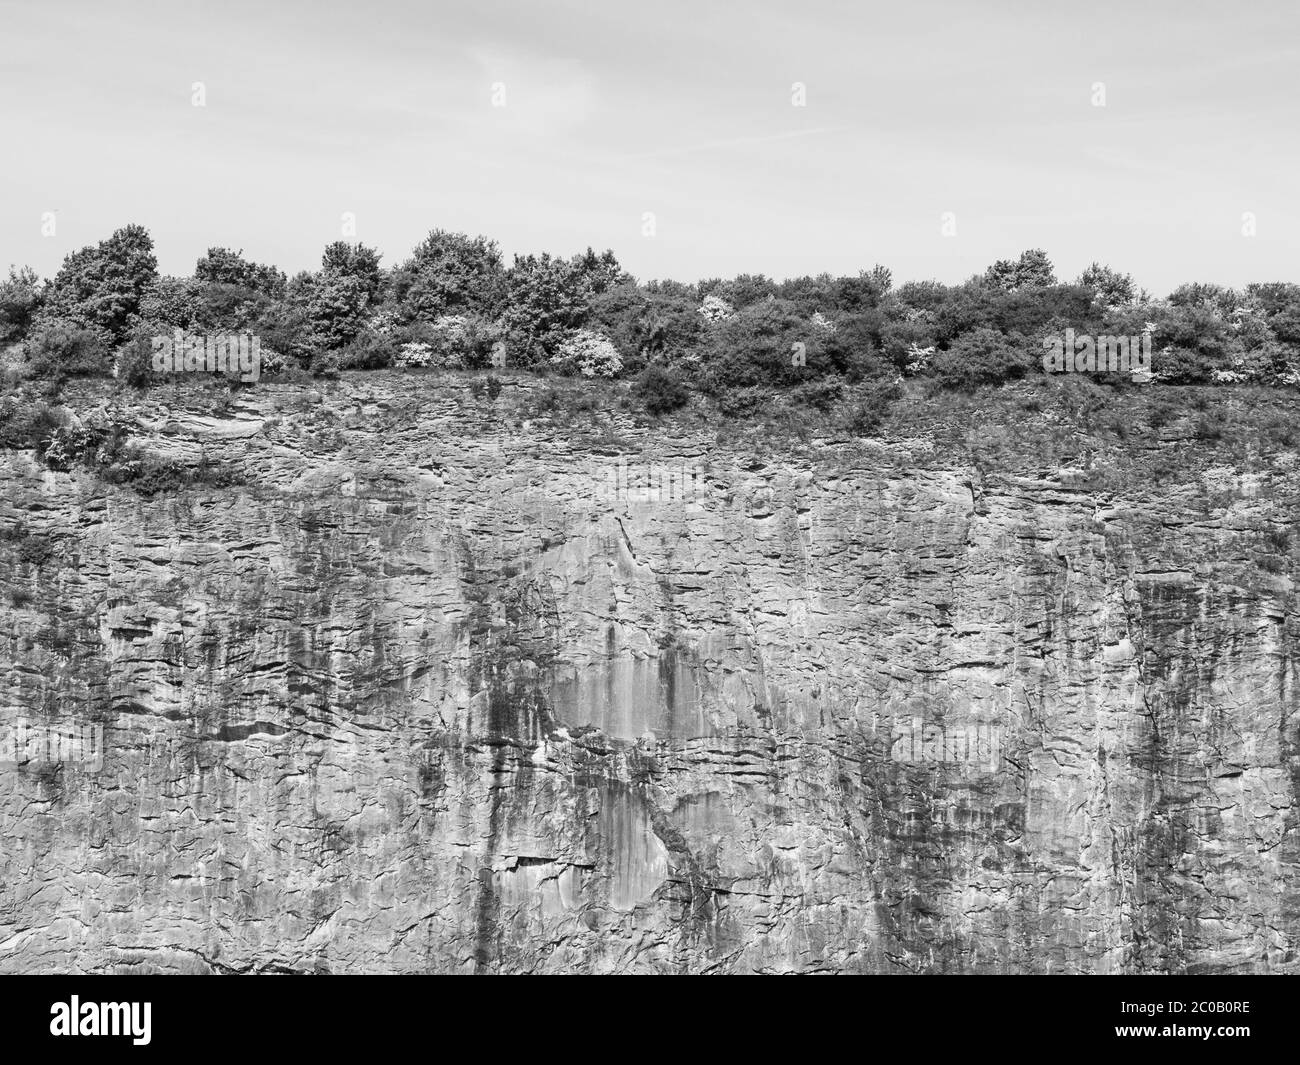 Fin du monde, mur en pierre vertical d'une ancienne carrière de chaux avec buisson sur le bord, image en noir et blanc Banque D'Images